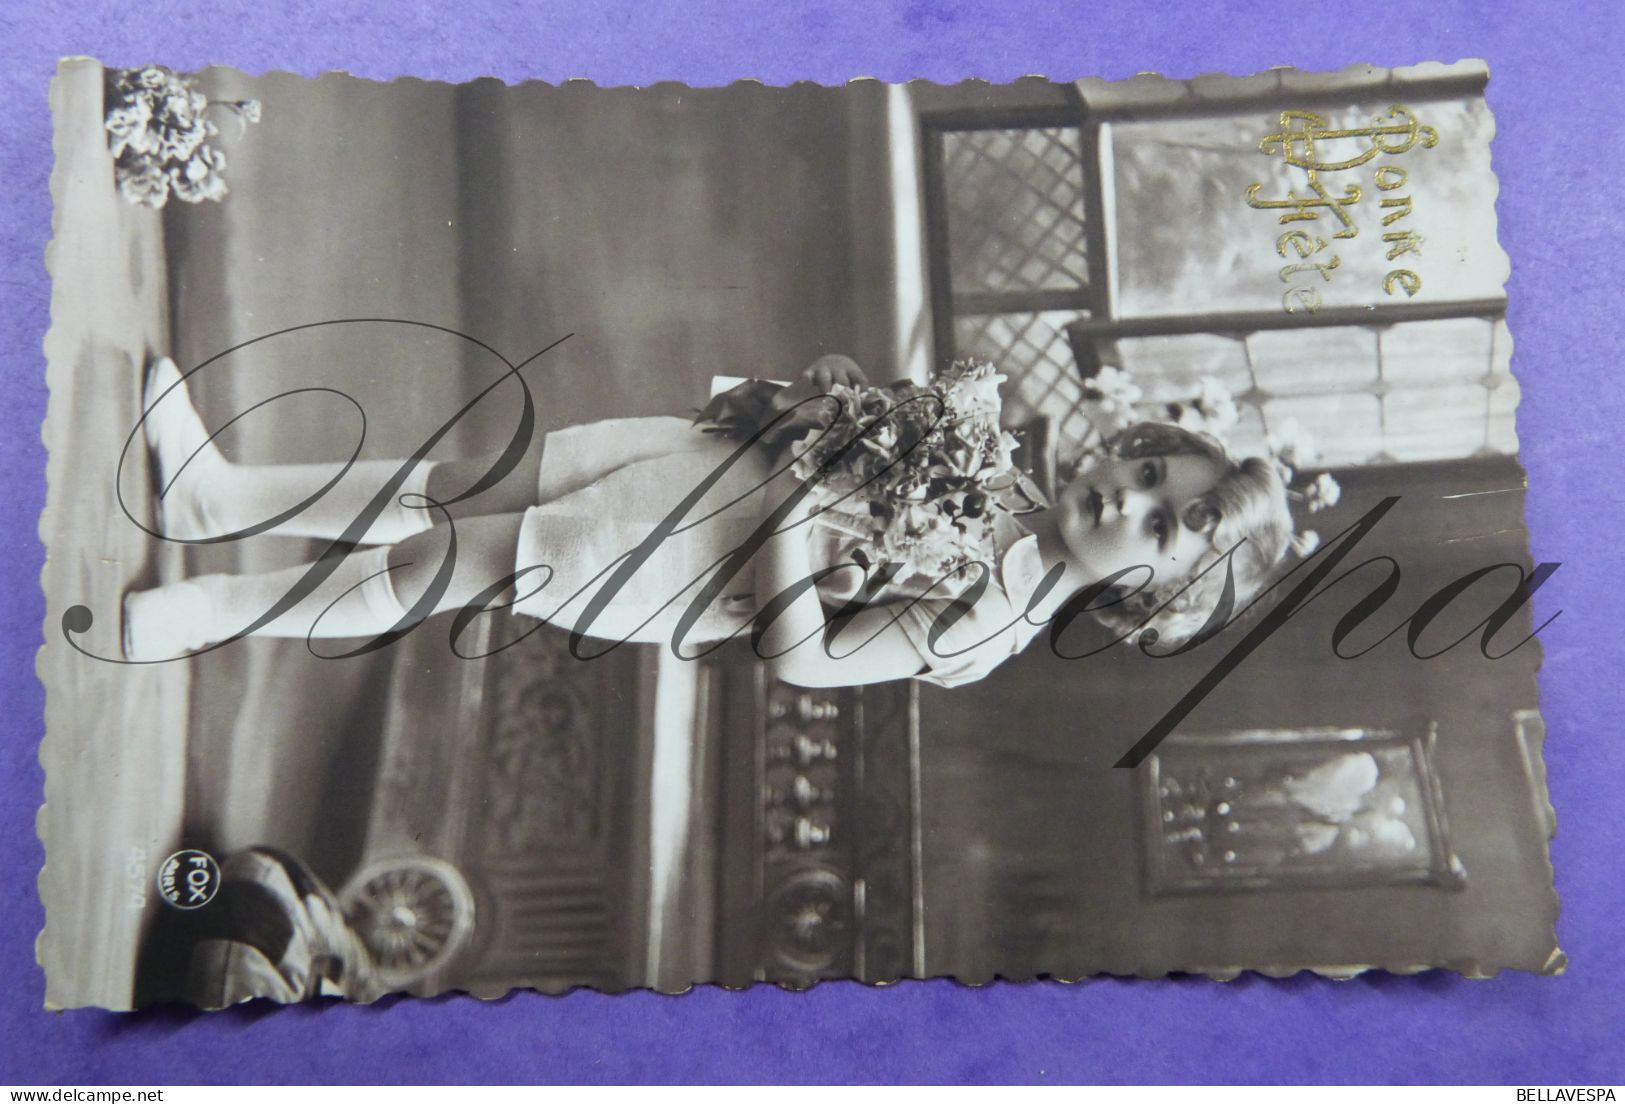 Fantasie gemengd lot  90 x cpa  postkaarten Mode coiffure vintage couture haartooi kapsel